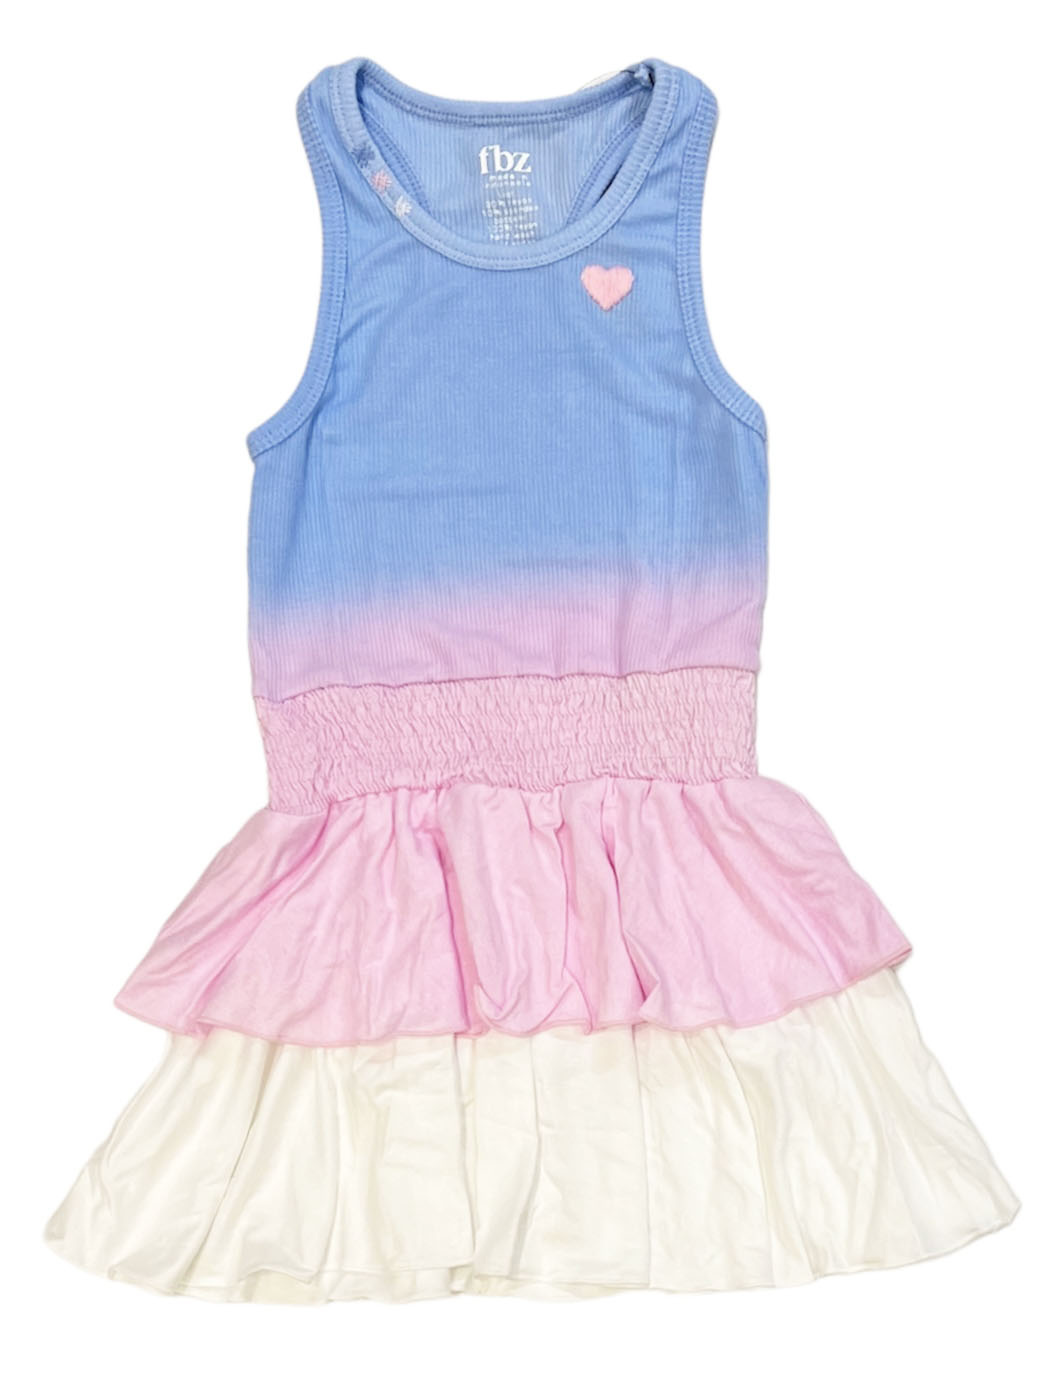 FBZ Blue/Pink Ombre Infant Dress